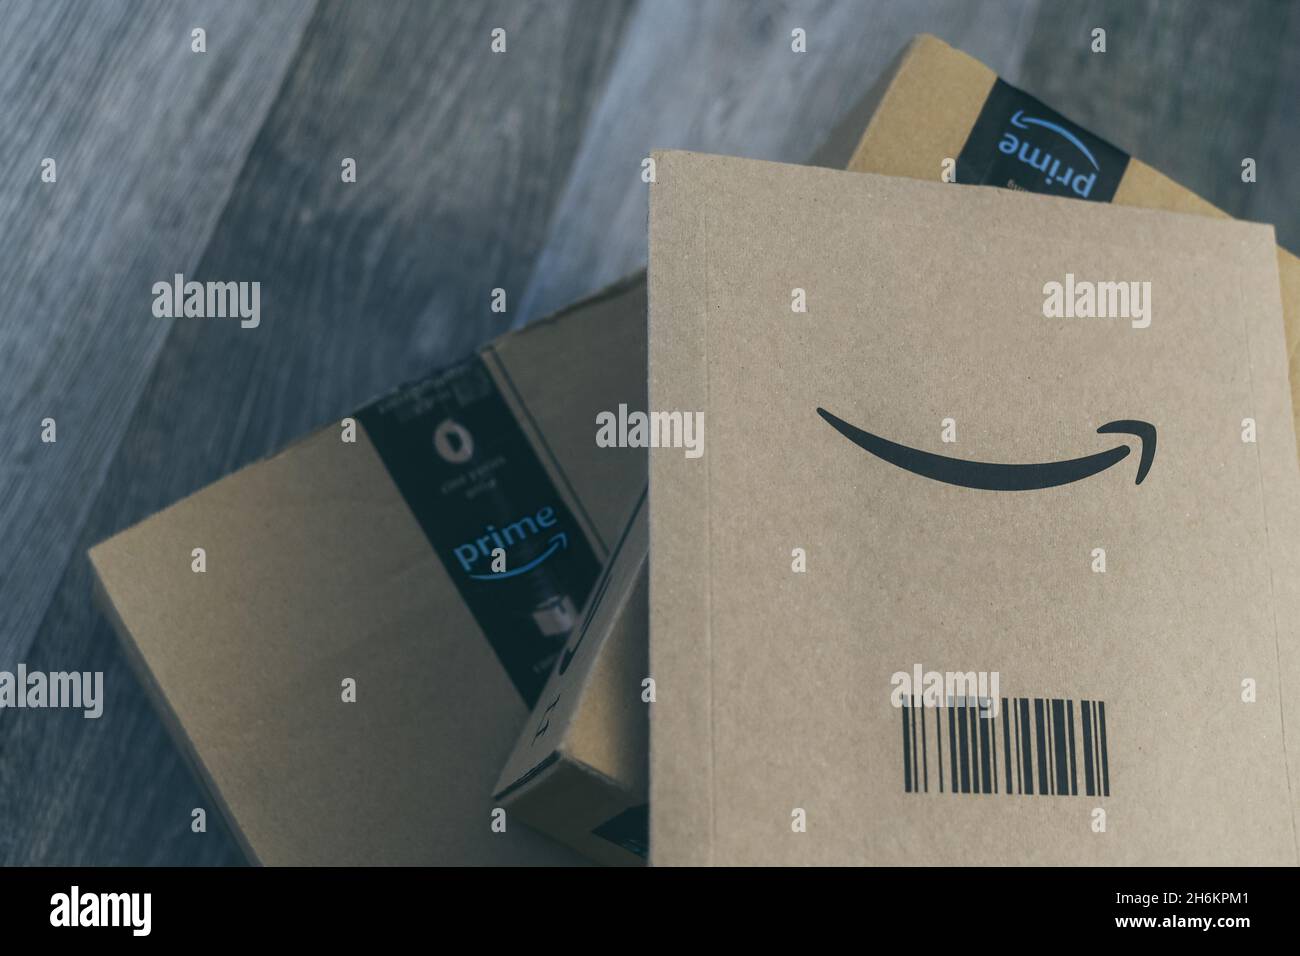 Boxen mit Amazon-Logo auf dem Boden. Bestellung bei Lieferung.  Weihnachtsgeschenke im Karton bereit zum Öffnen. Amazon Prime Priority  Delivery E-Commerce Stockfotografie - Alamy